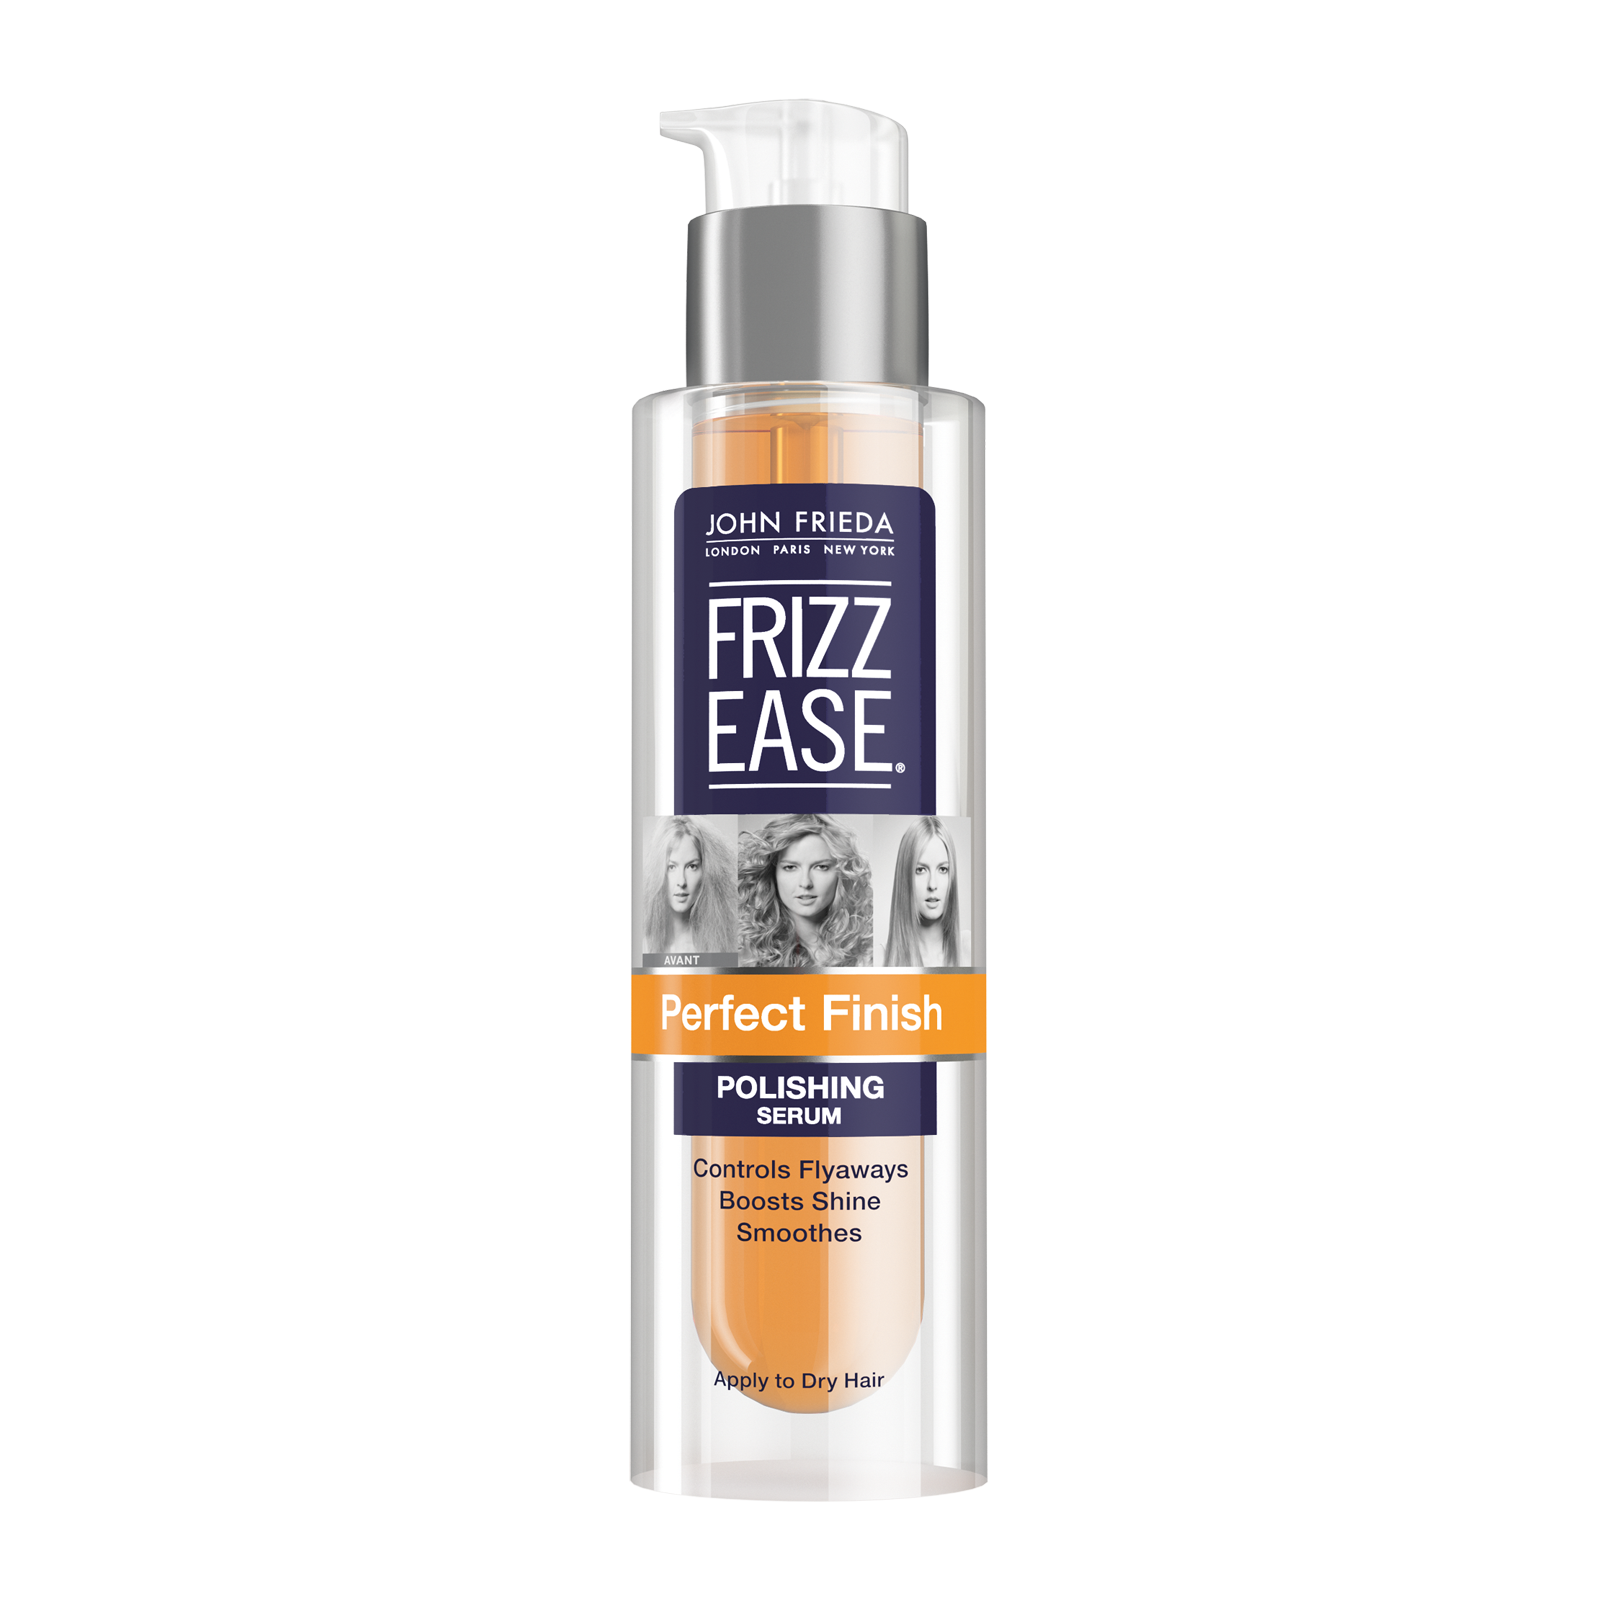 Frizz Ease Expert Hair Styler Free Sample